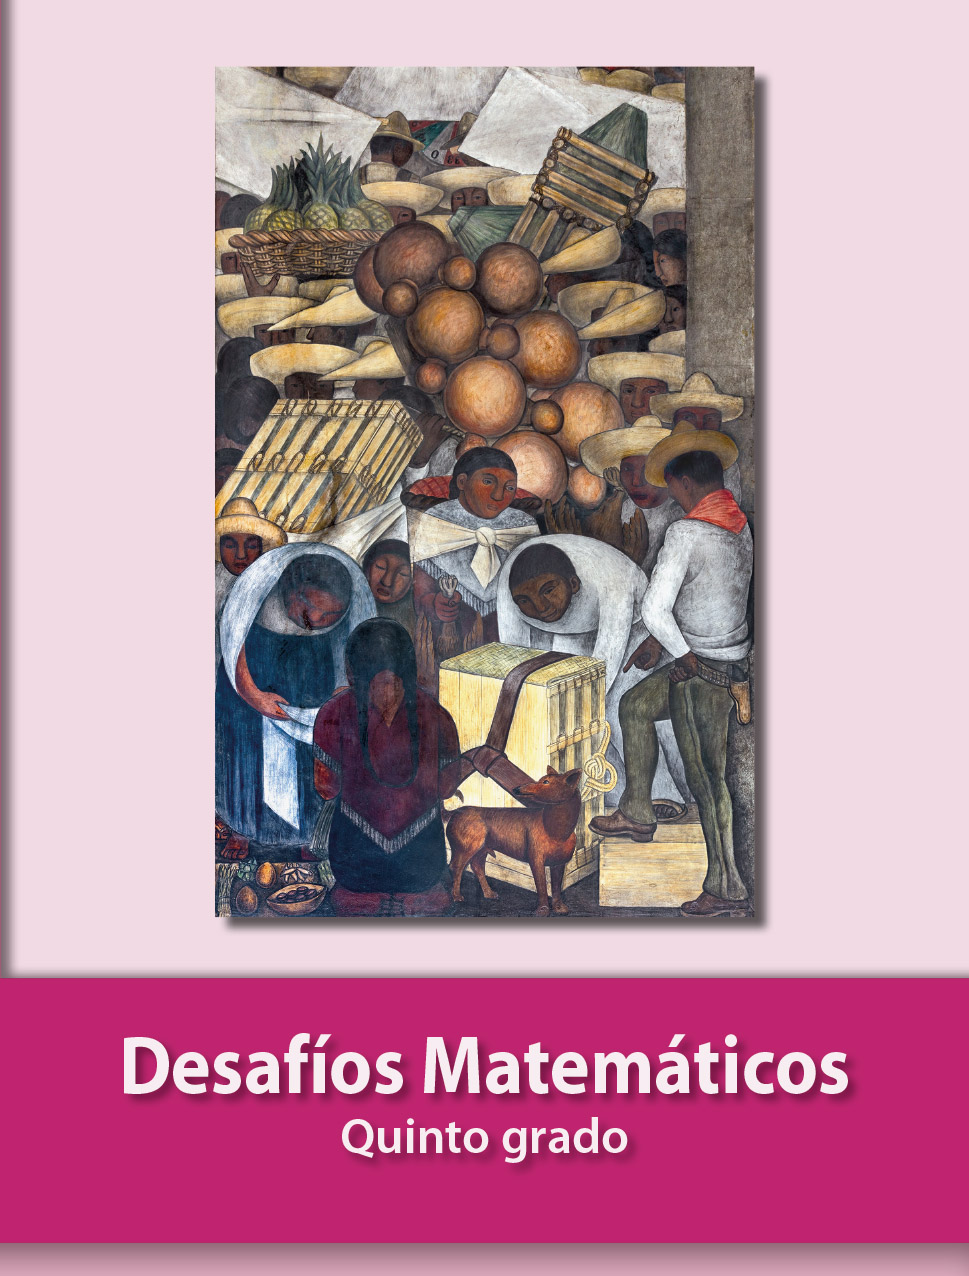 Desafíos Matemáticos Quinto grado 2020-2021 - Libros de Texto Online